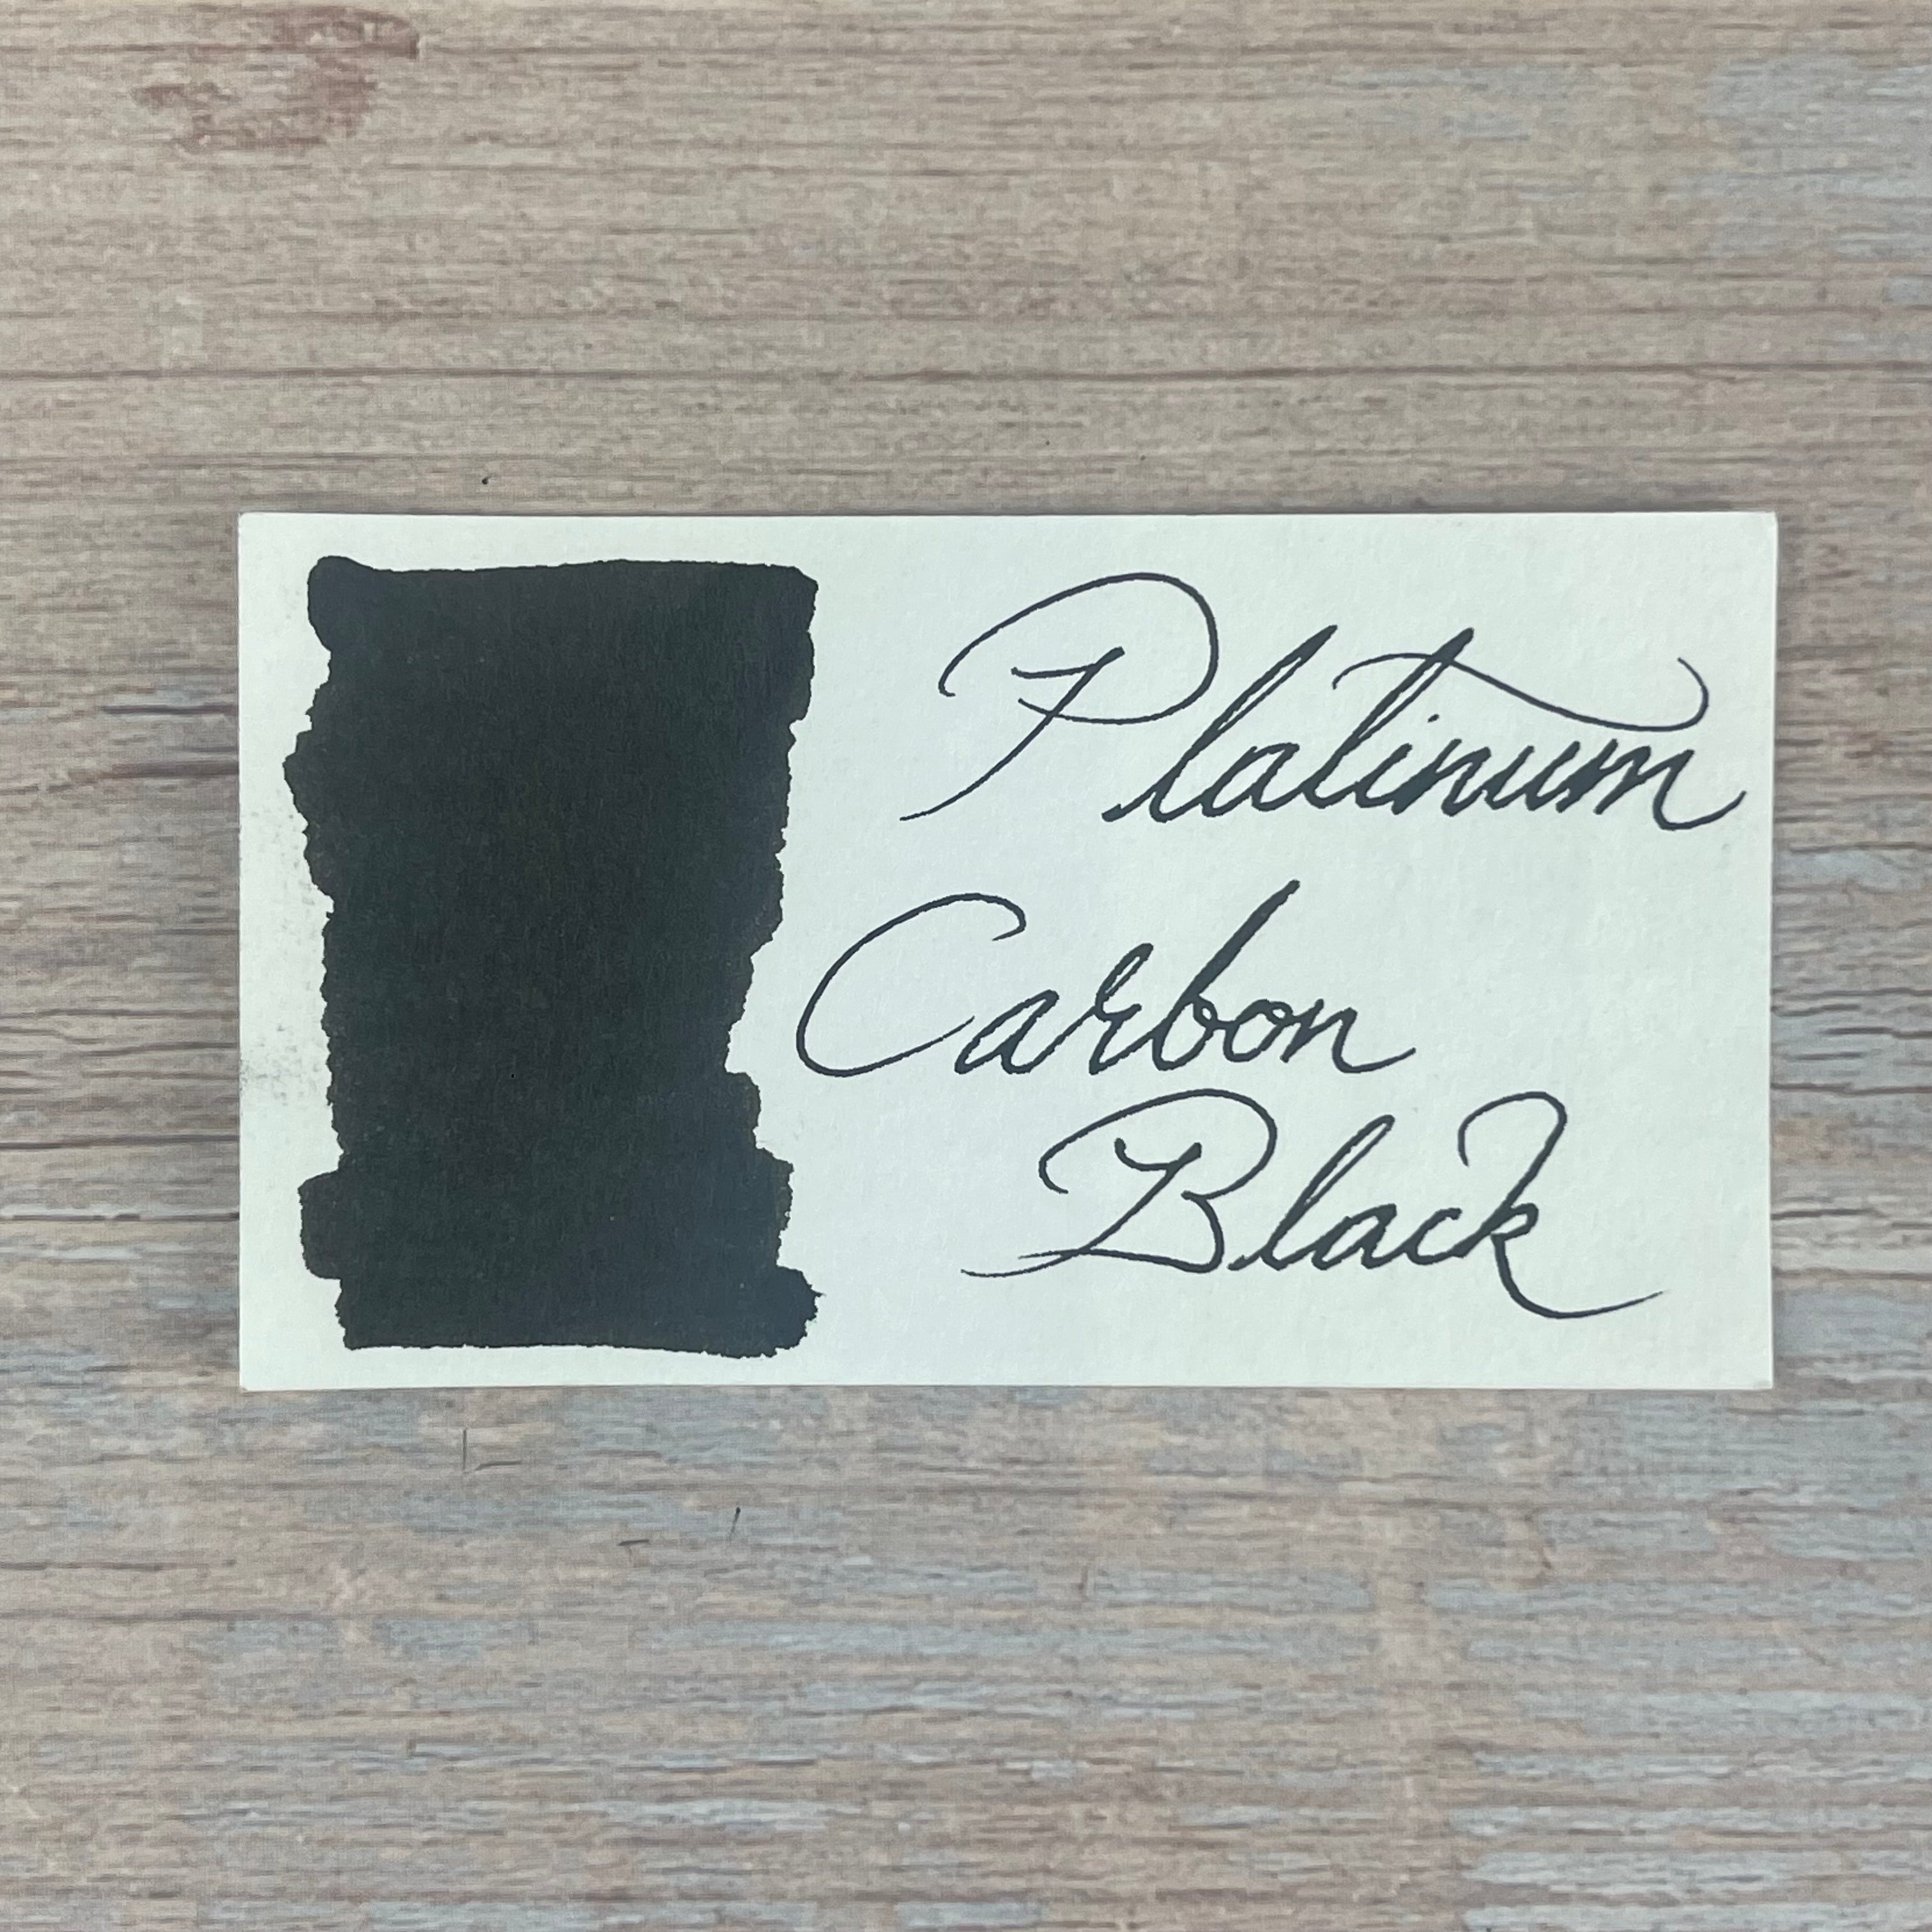 Platinum Carbon Black 